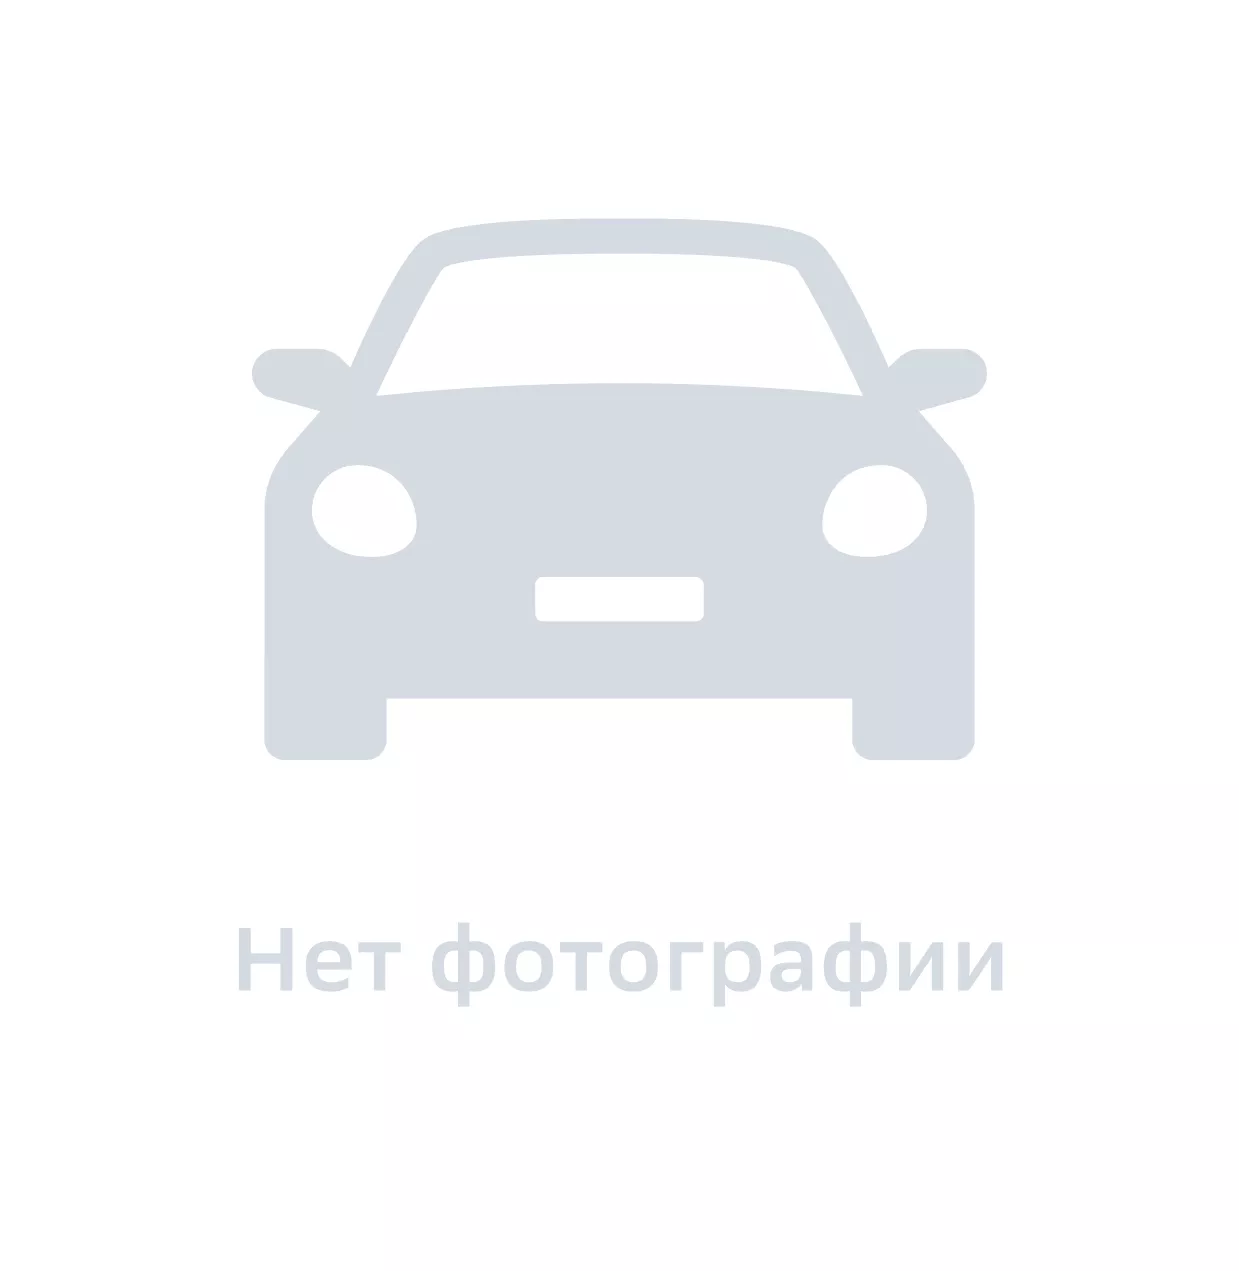 Предохранитель автомобильный, Hyundai-KIA, 9182914000, цена за 1 шт.